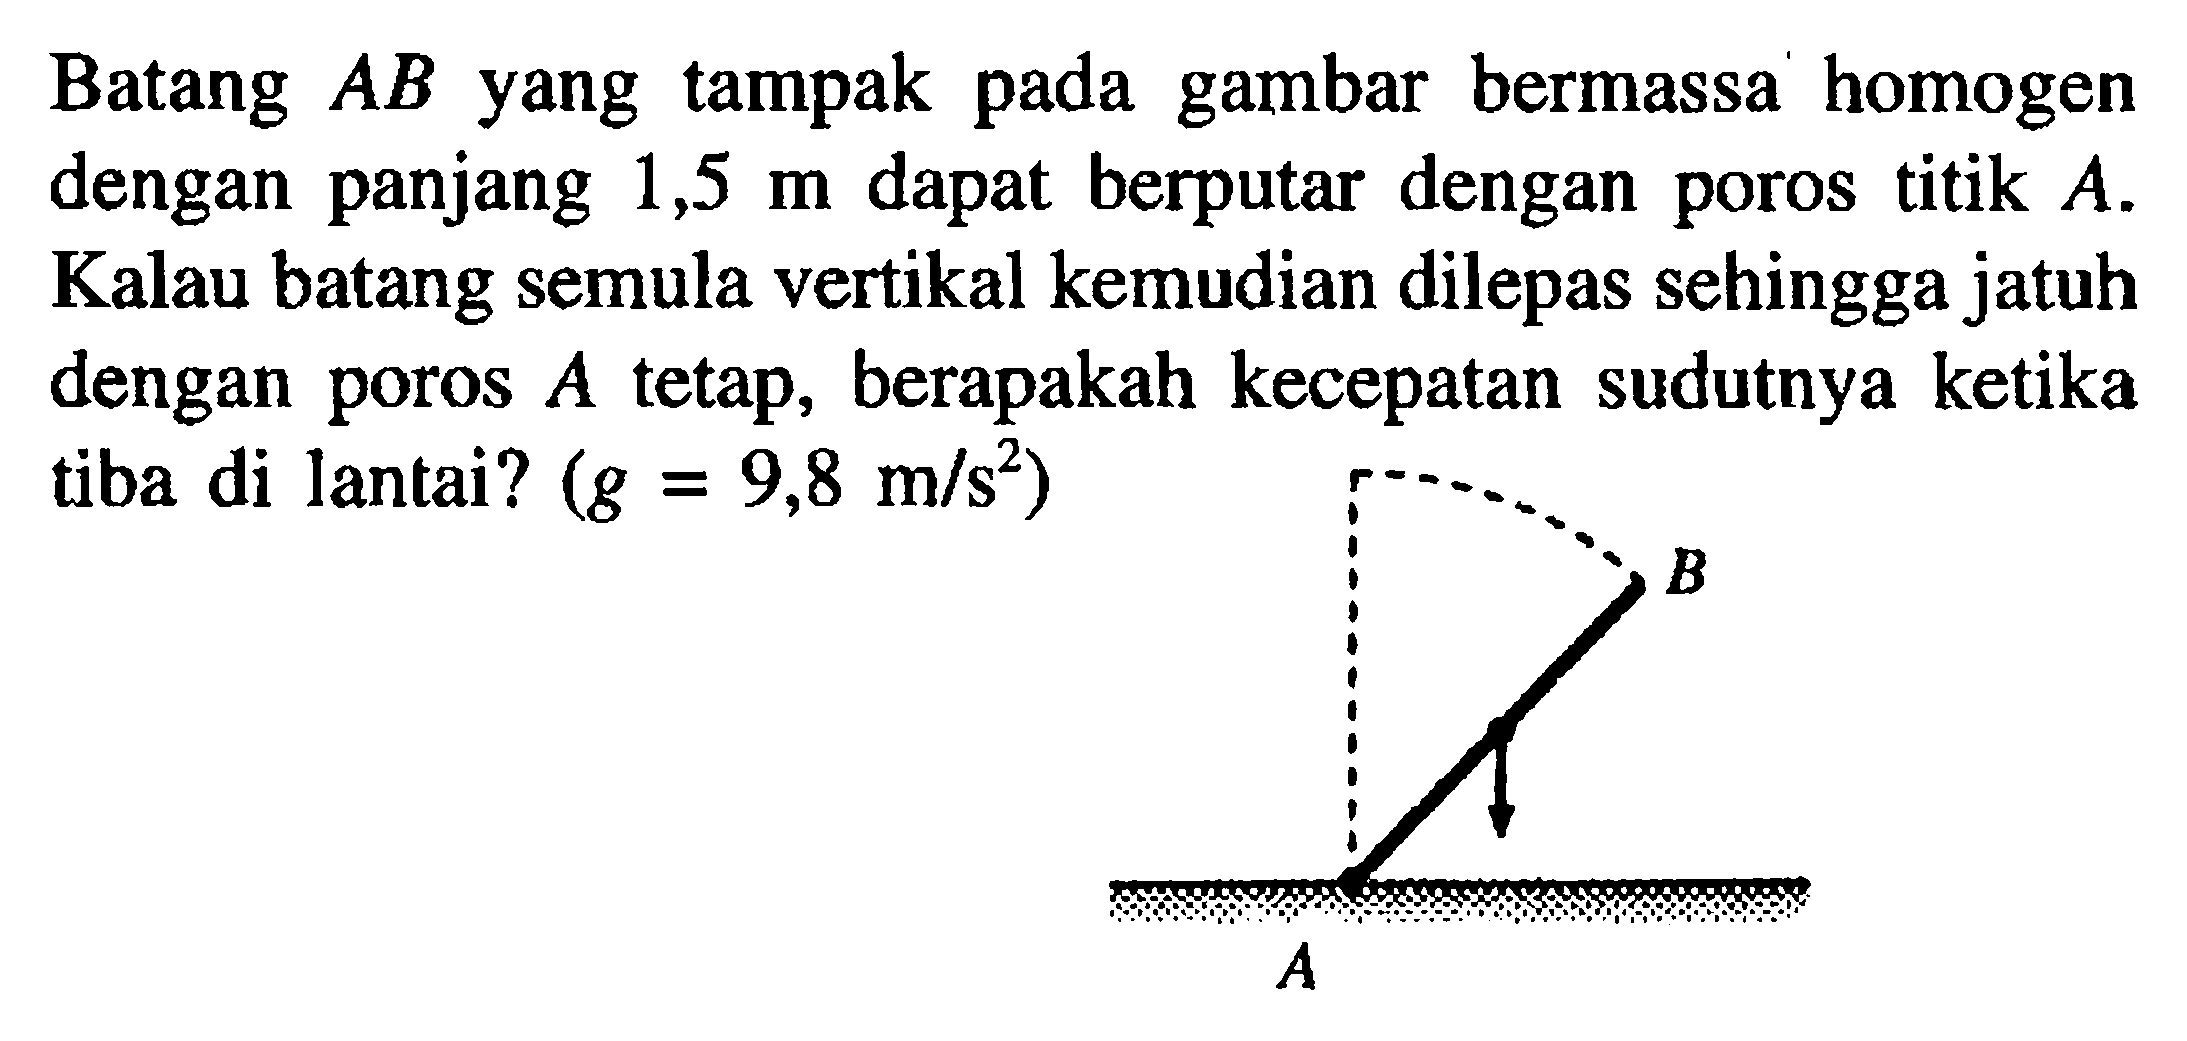 Batang AB yang tampak pada gambar bermassa homogen dengan panjang 1,5 m dapat berputar dengan poros titik A. Kalau batang semula vertikal kemudian dilepas sehingga jatuh dengan poros A tetap, berapakah kecepatan sudutnya ketika tiba di lantai? (g = 9,8 m/s^2)